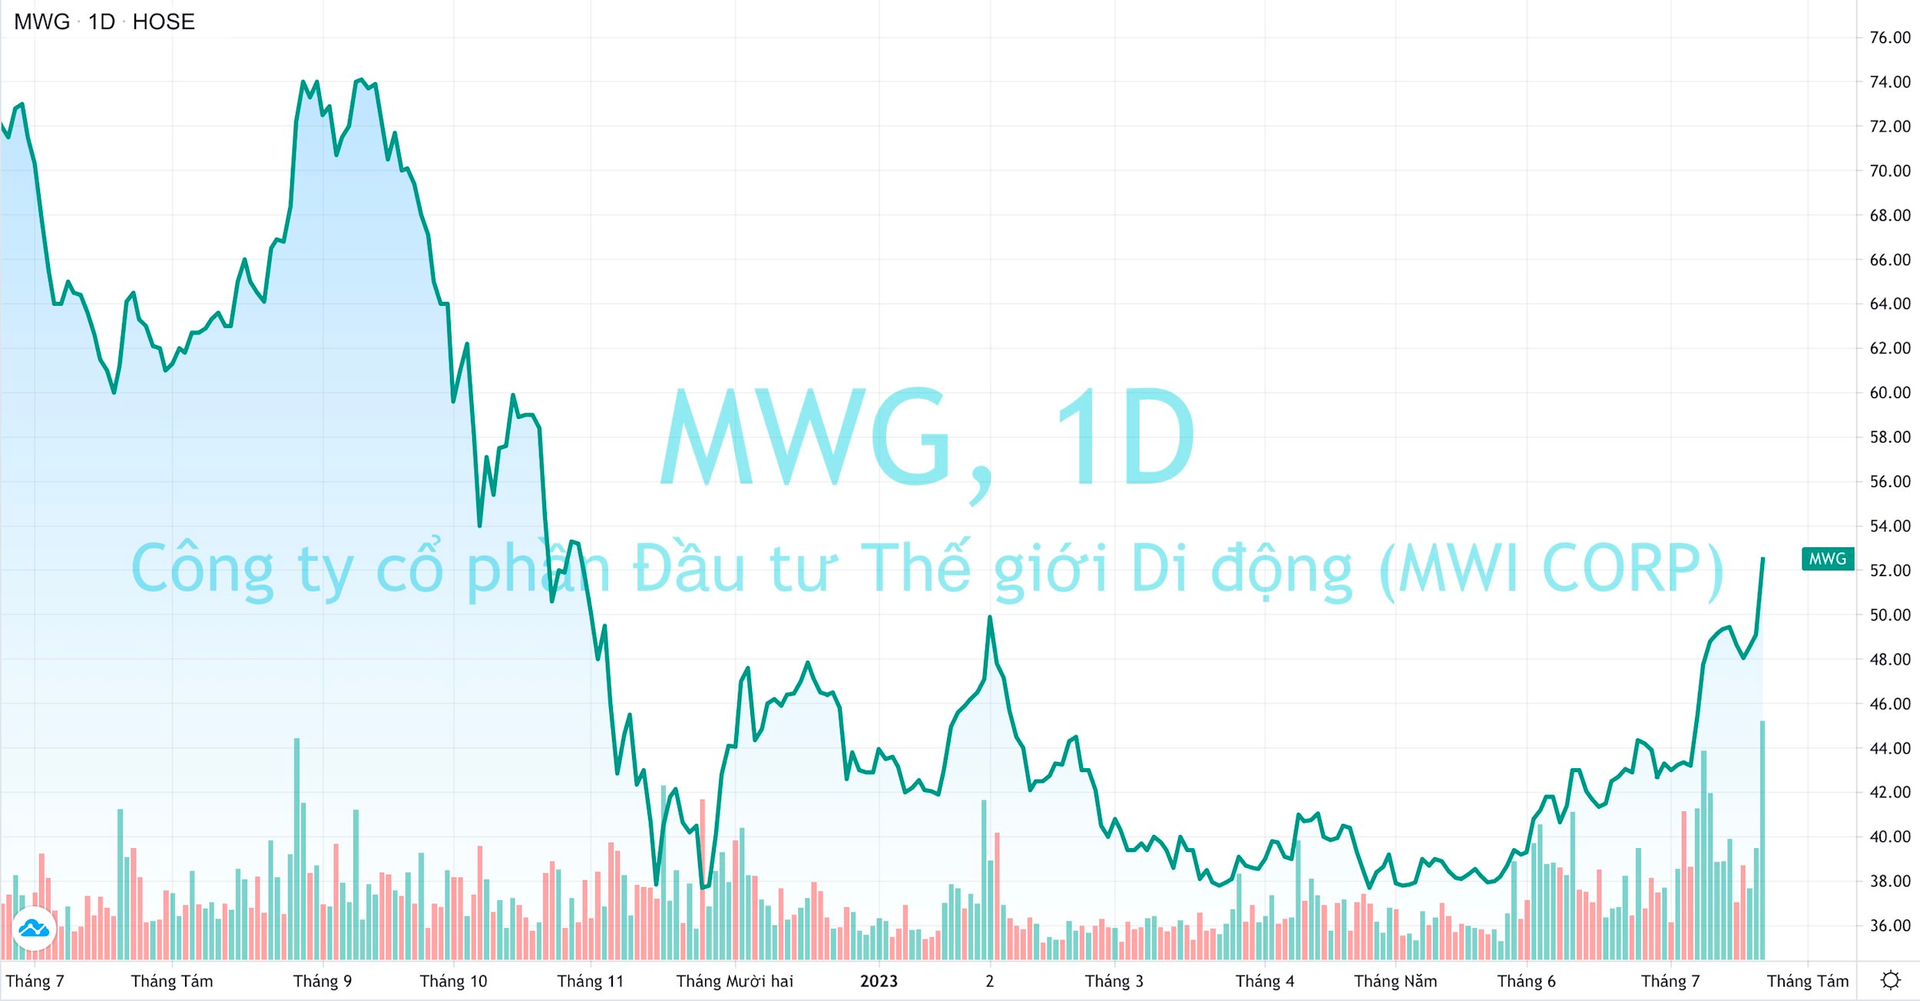 Thế Giới Di Động (MWG) khớp lệnh kỷ lục, cổ phiếu tăng kịch trần lên đỉnh 9 tháng - Ảnh 1.